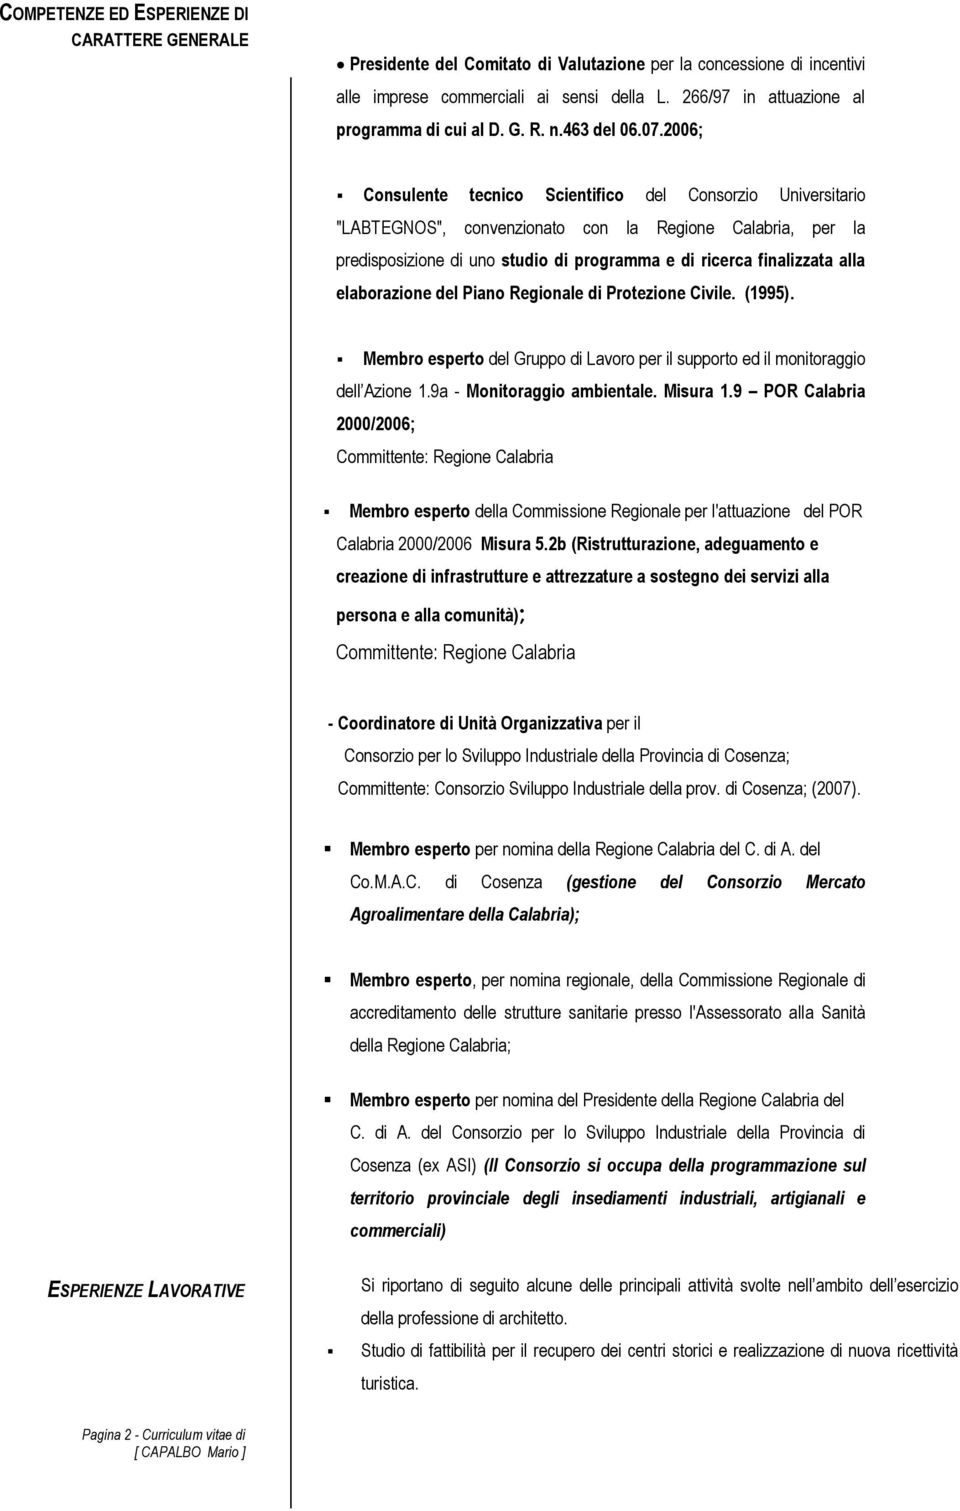 2006; Consulente tecnico Scientifico del Consorzio Universitario "LABTEGNOS", convenzionato con la Regione Calabria, per la predisposizione di uno studio di programma e di ricerca finalizzata alla